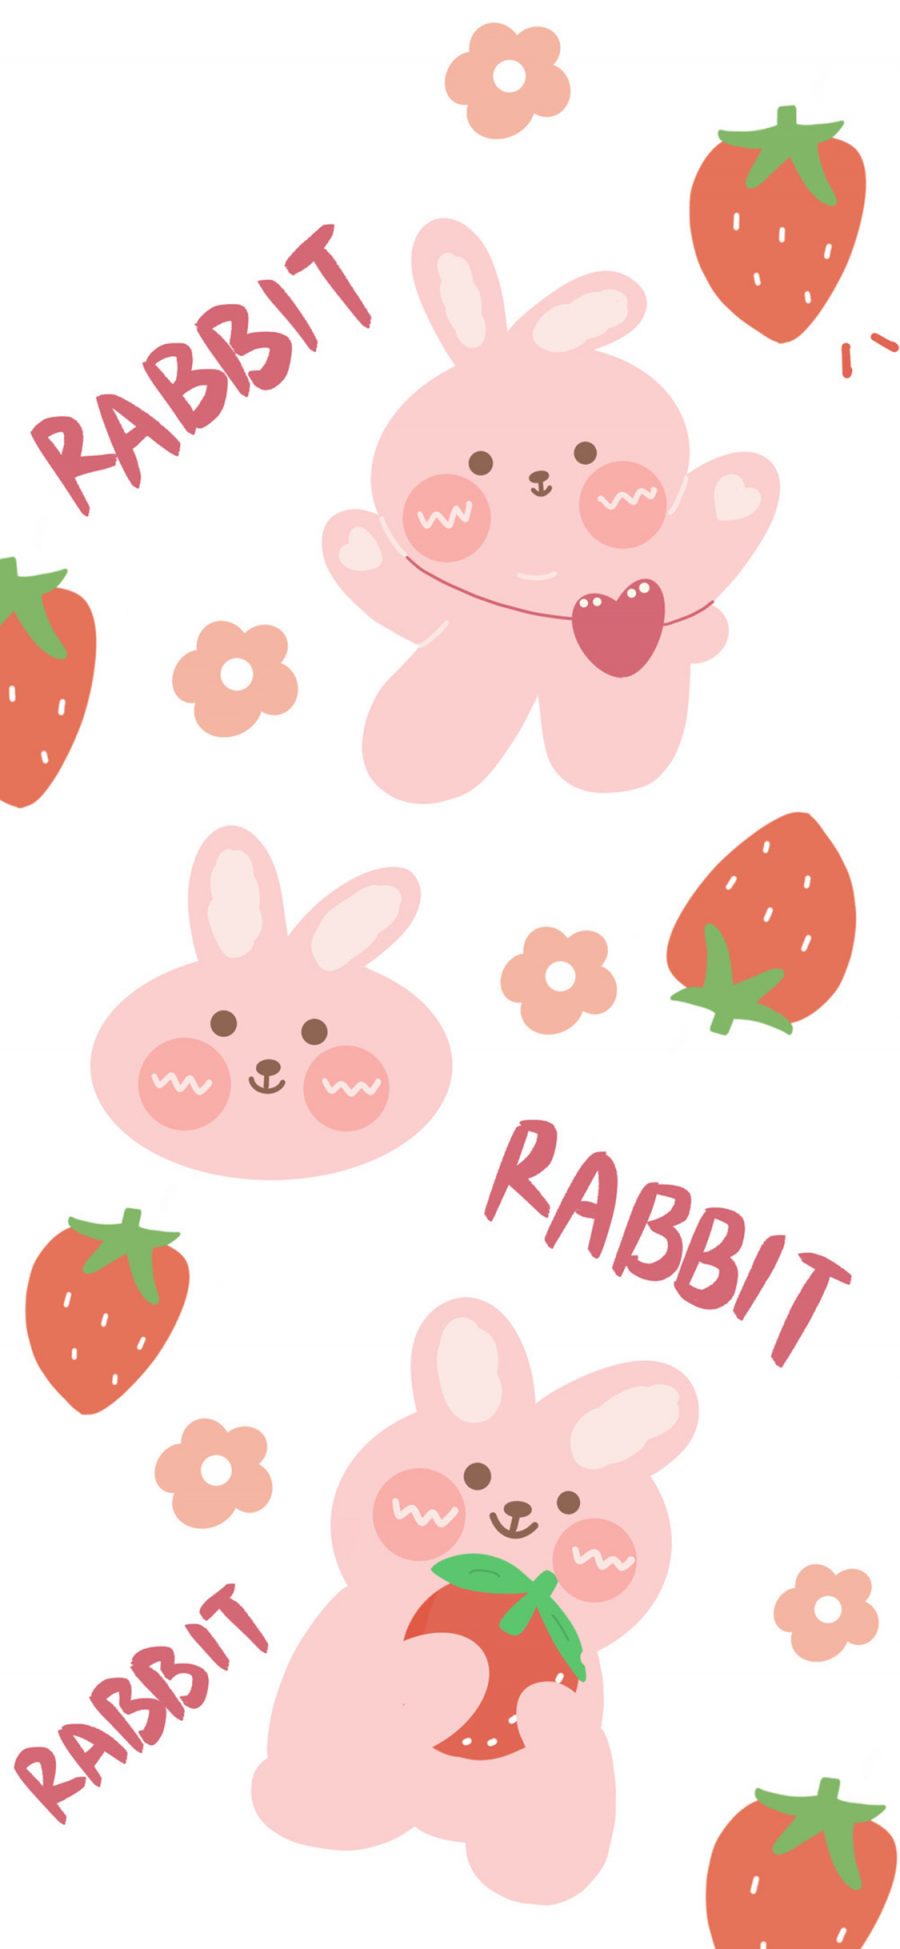 [2436×1125]平铺 草莓 rabbit 兔子 苹果手机动漫壁纸图片